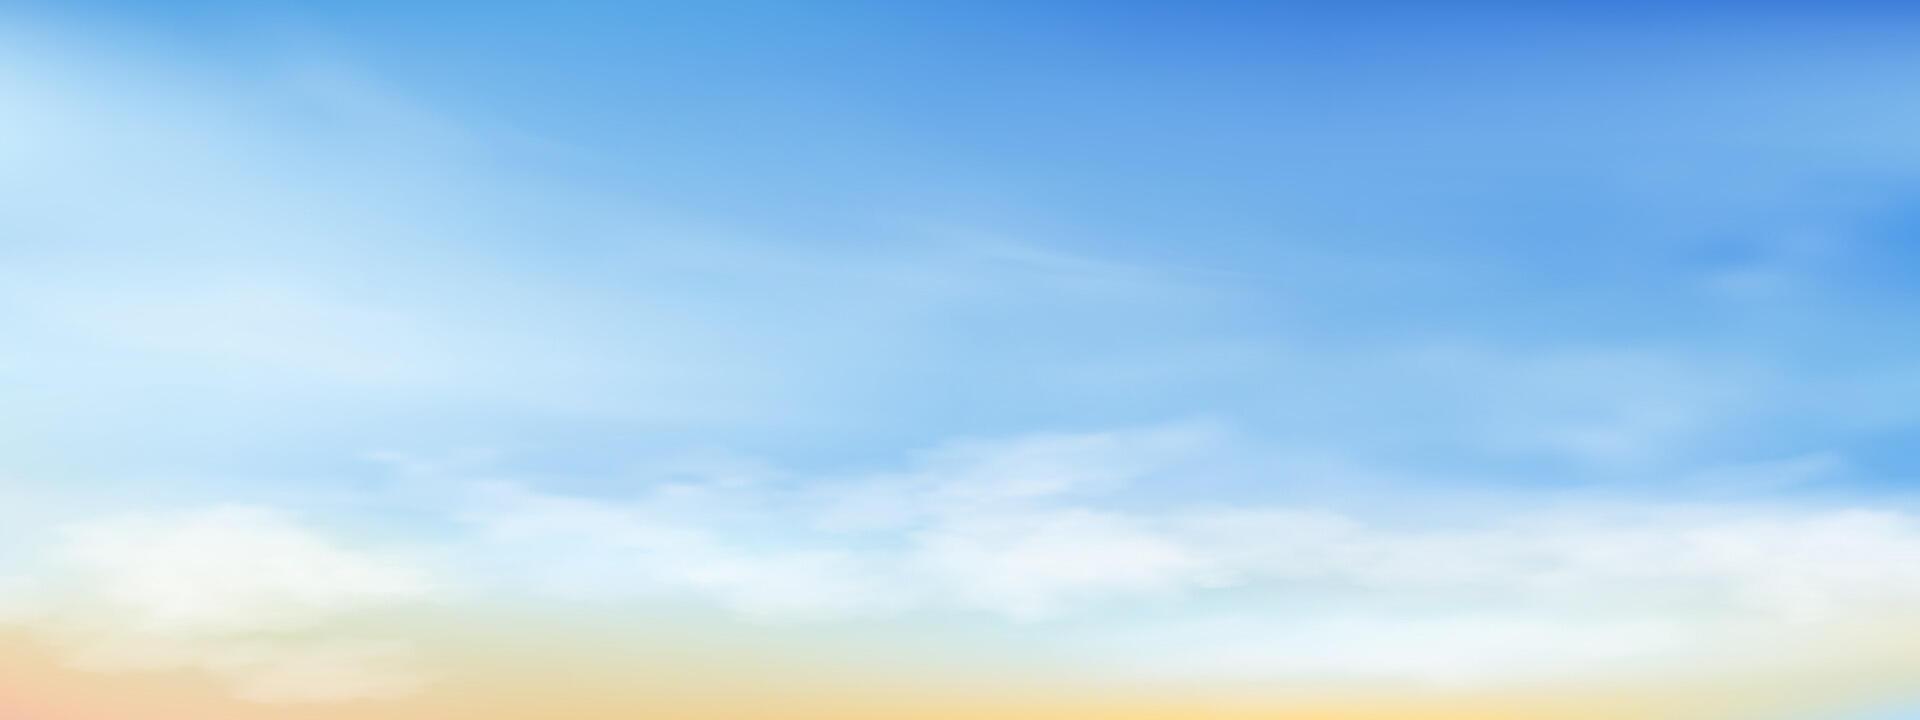 Himmel Blau mit Wolke Hintergrund ,Vektor Horizont Strand Sonnenuntergang mit Gelb und Blau Farbe im Frühling, Panorama schön Natur Morgen Sonnenaufgang Himmel im sonnig Tag Sommer, Banner Landschaft Hintergrund vektor